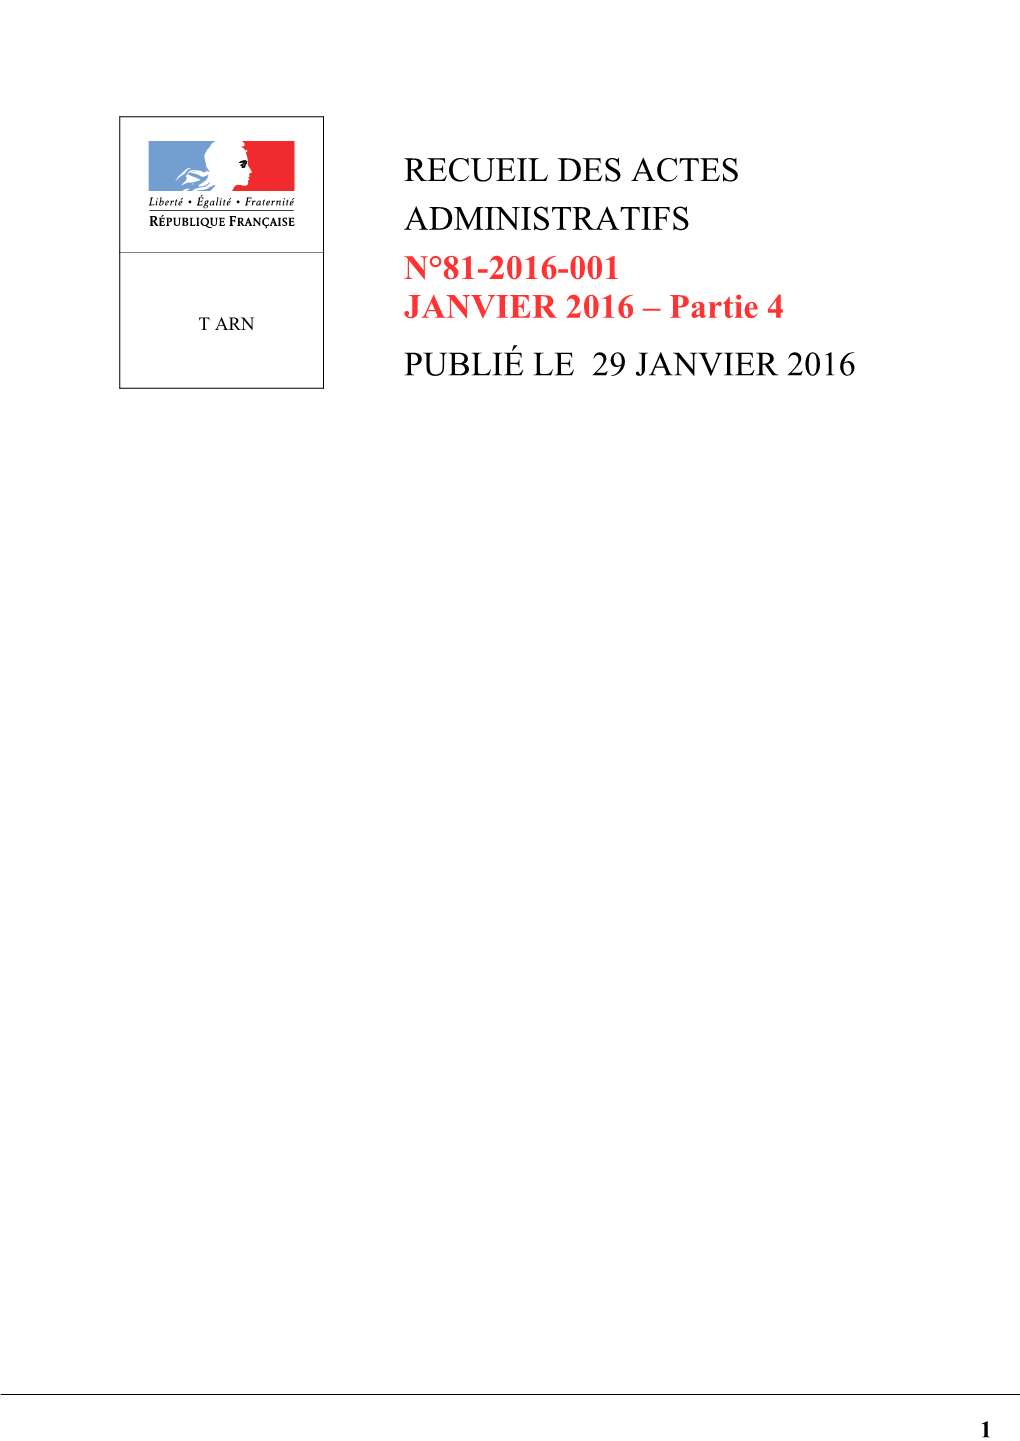 Partie 4 PUBLIÉ LE 29 JANVIER 2016